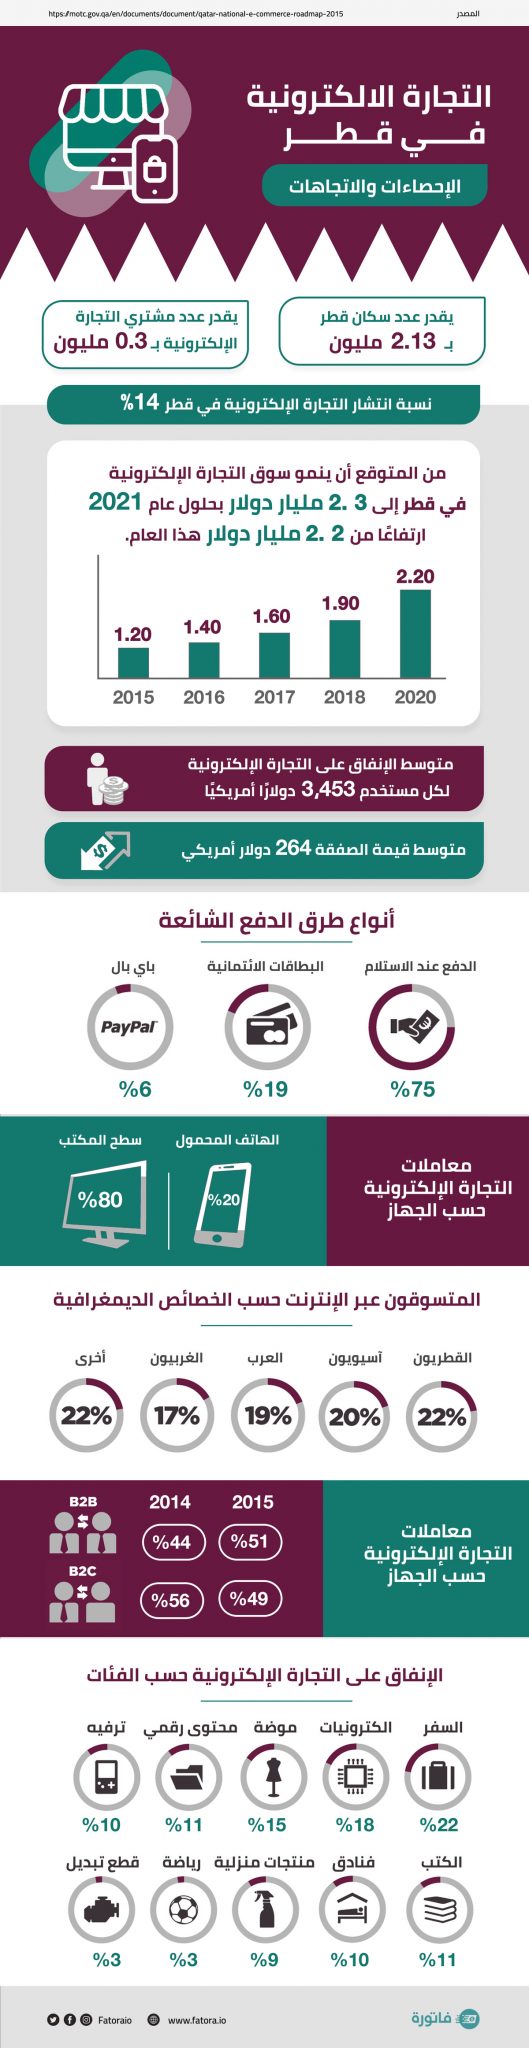 التجارة-الإلكترونية-في-قطر